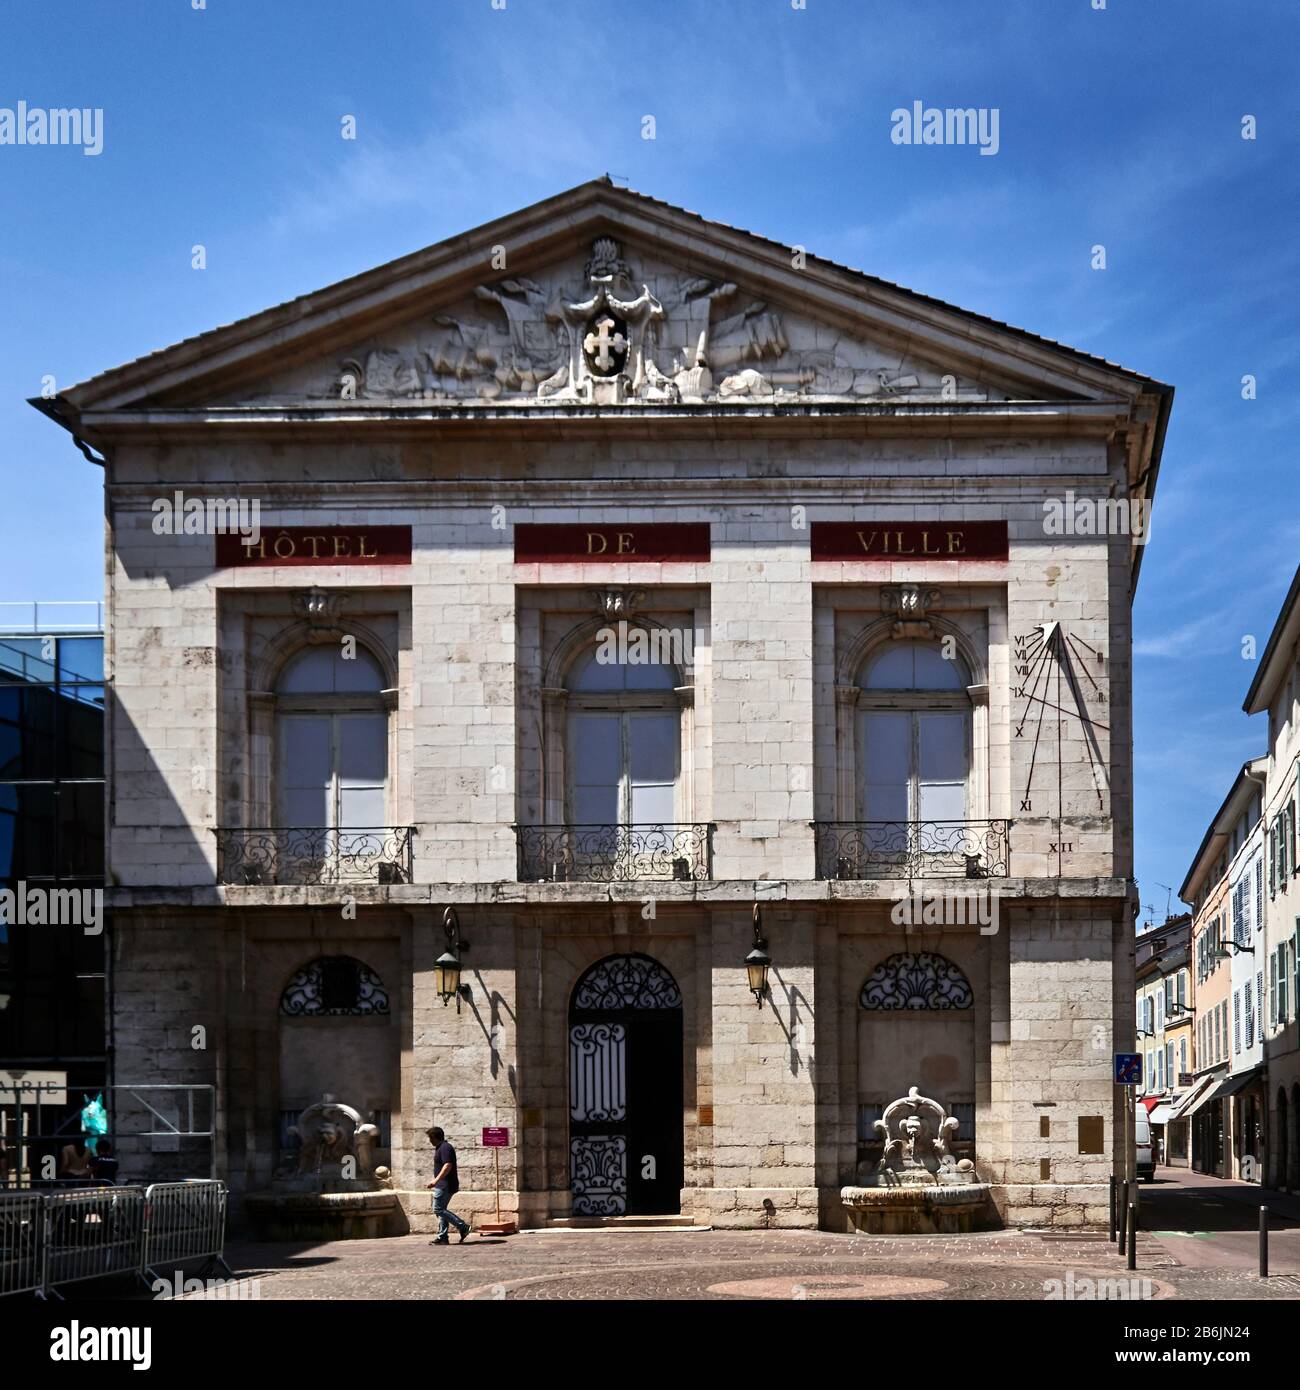 France, département de l'Ain, Auvergne - Rhône - Alpes région. Bourg-en-Bresse, l'Hôtel de Ville est un bâtiment en pierre de 1771, sur son pediment les bras de la ville et la croix tirée de Savoie Banque D'Images